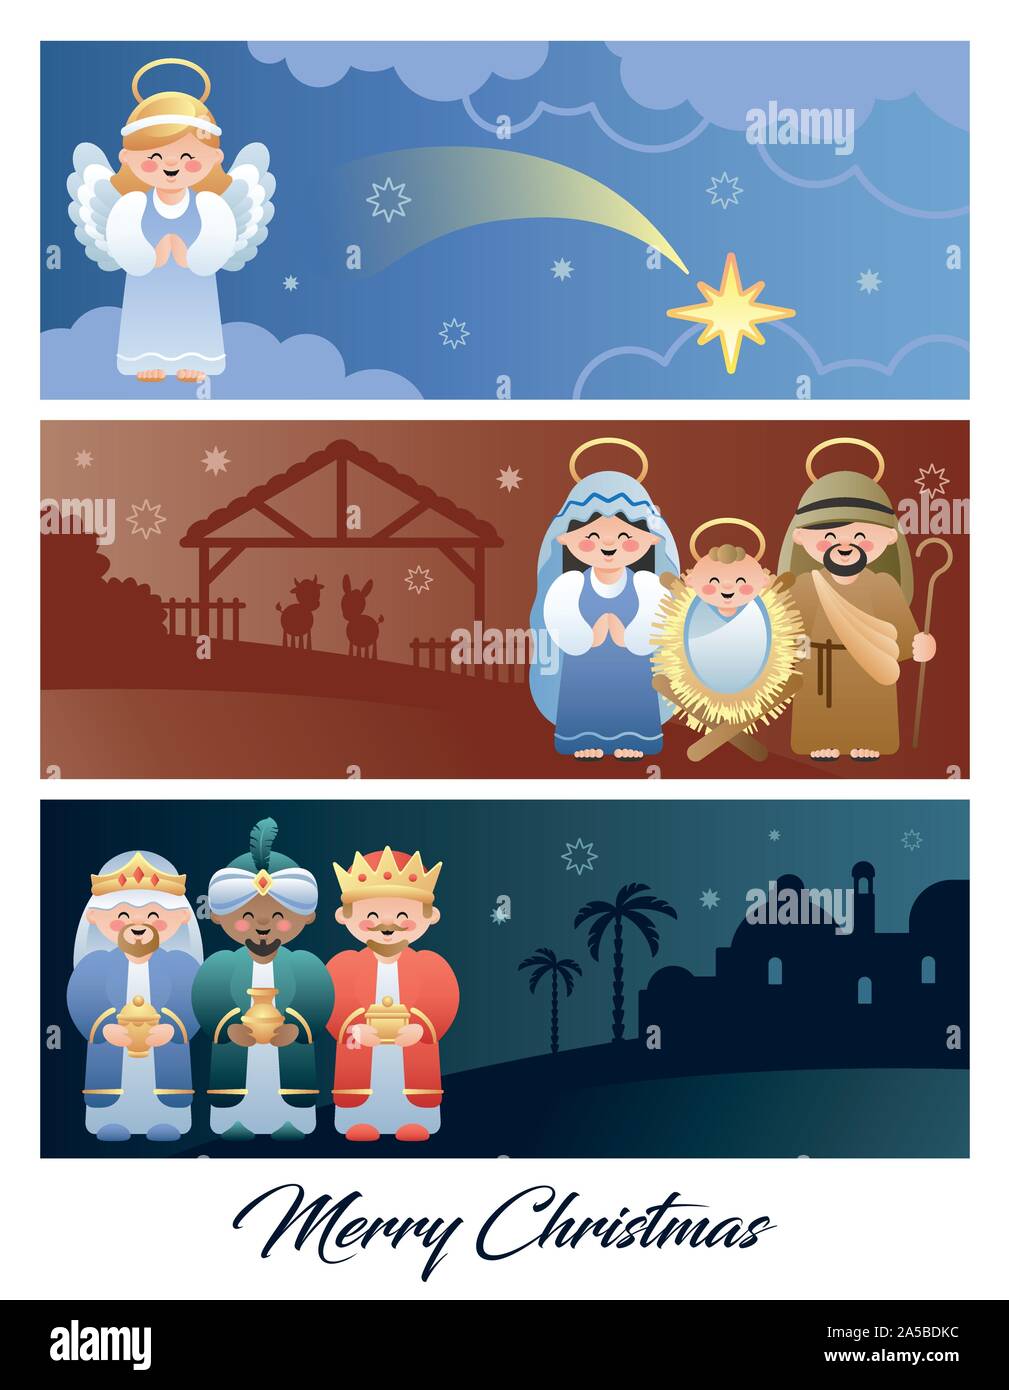 Feliz Navidad. Pesebre Navideño con la Sagrada Familia, Ángel y los Tres Reyes Magos. Cute dibujos animados. Ilustración vectorial. Ilustración del Vector